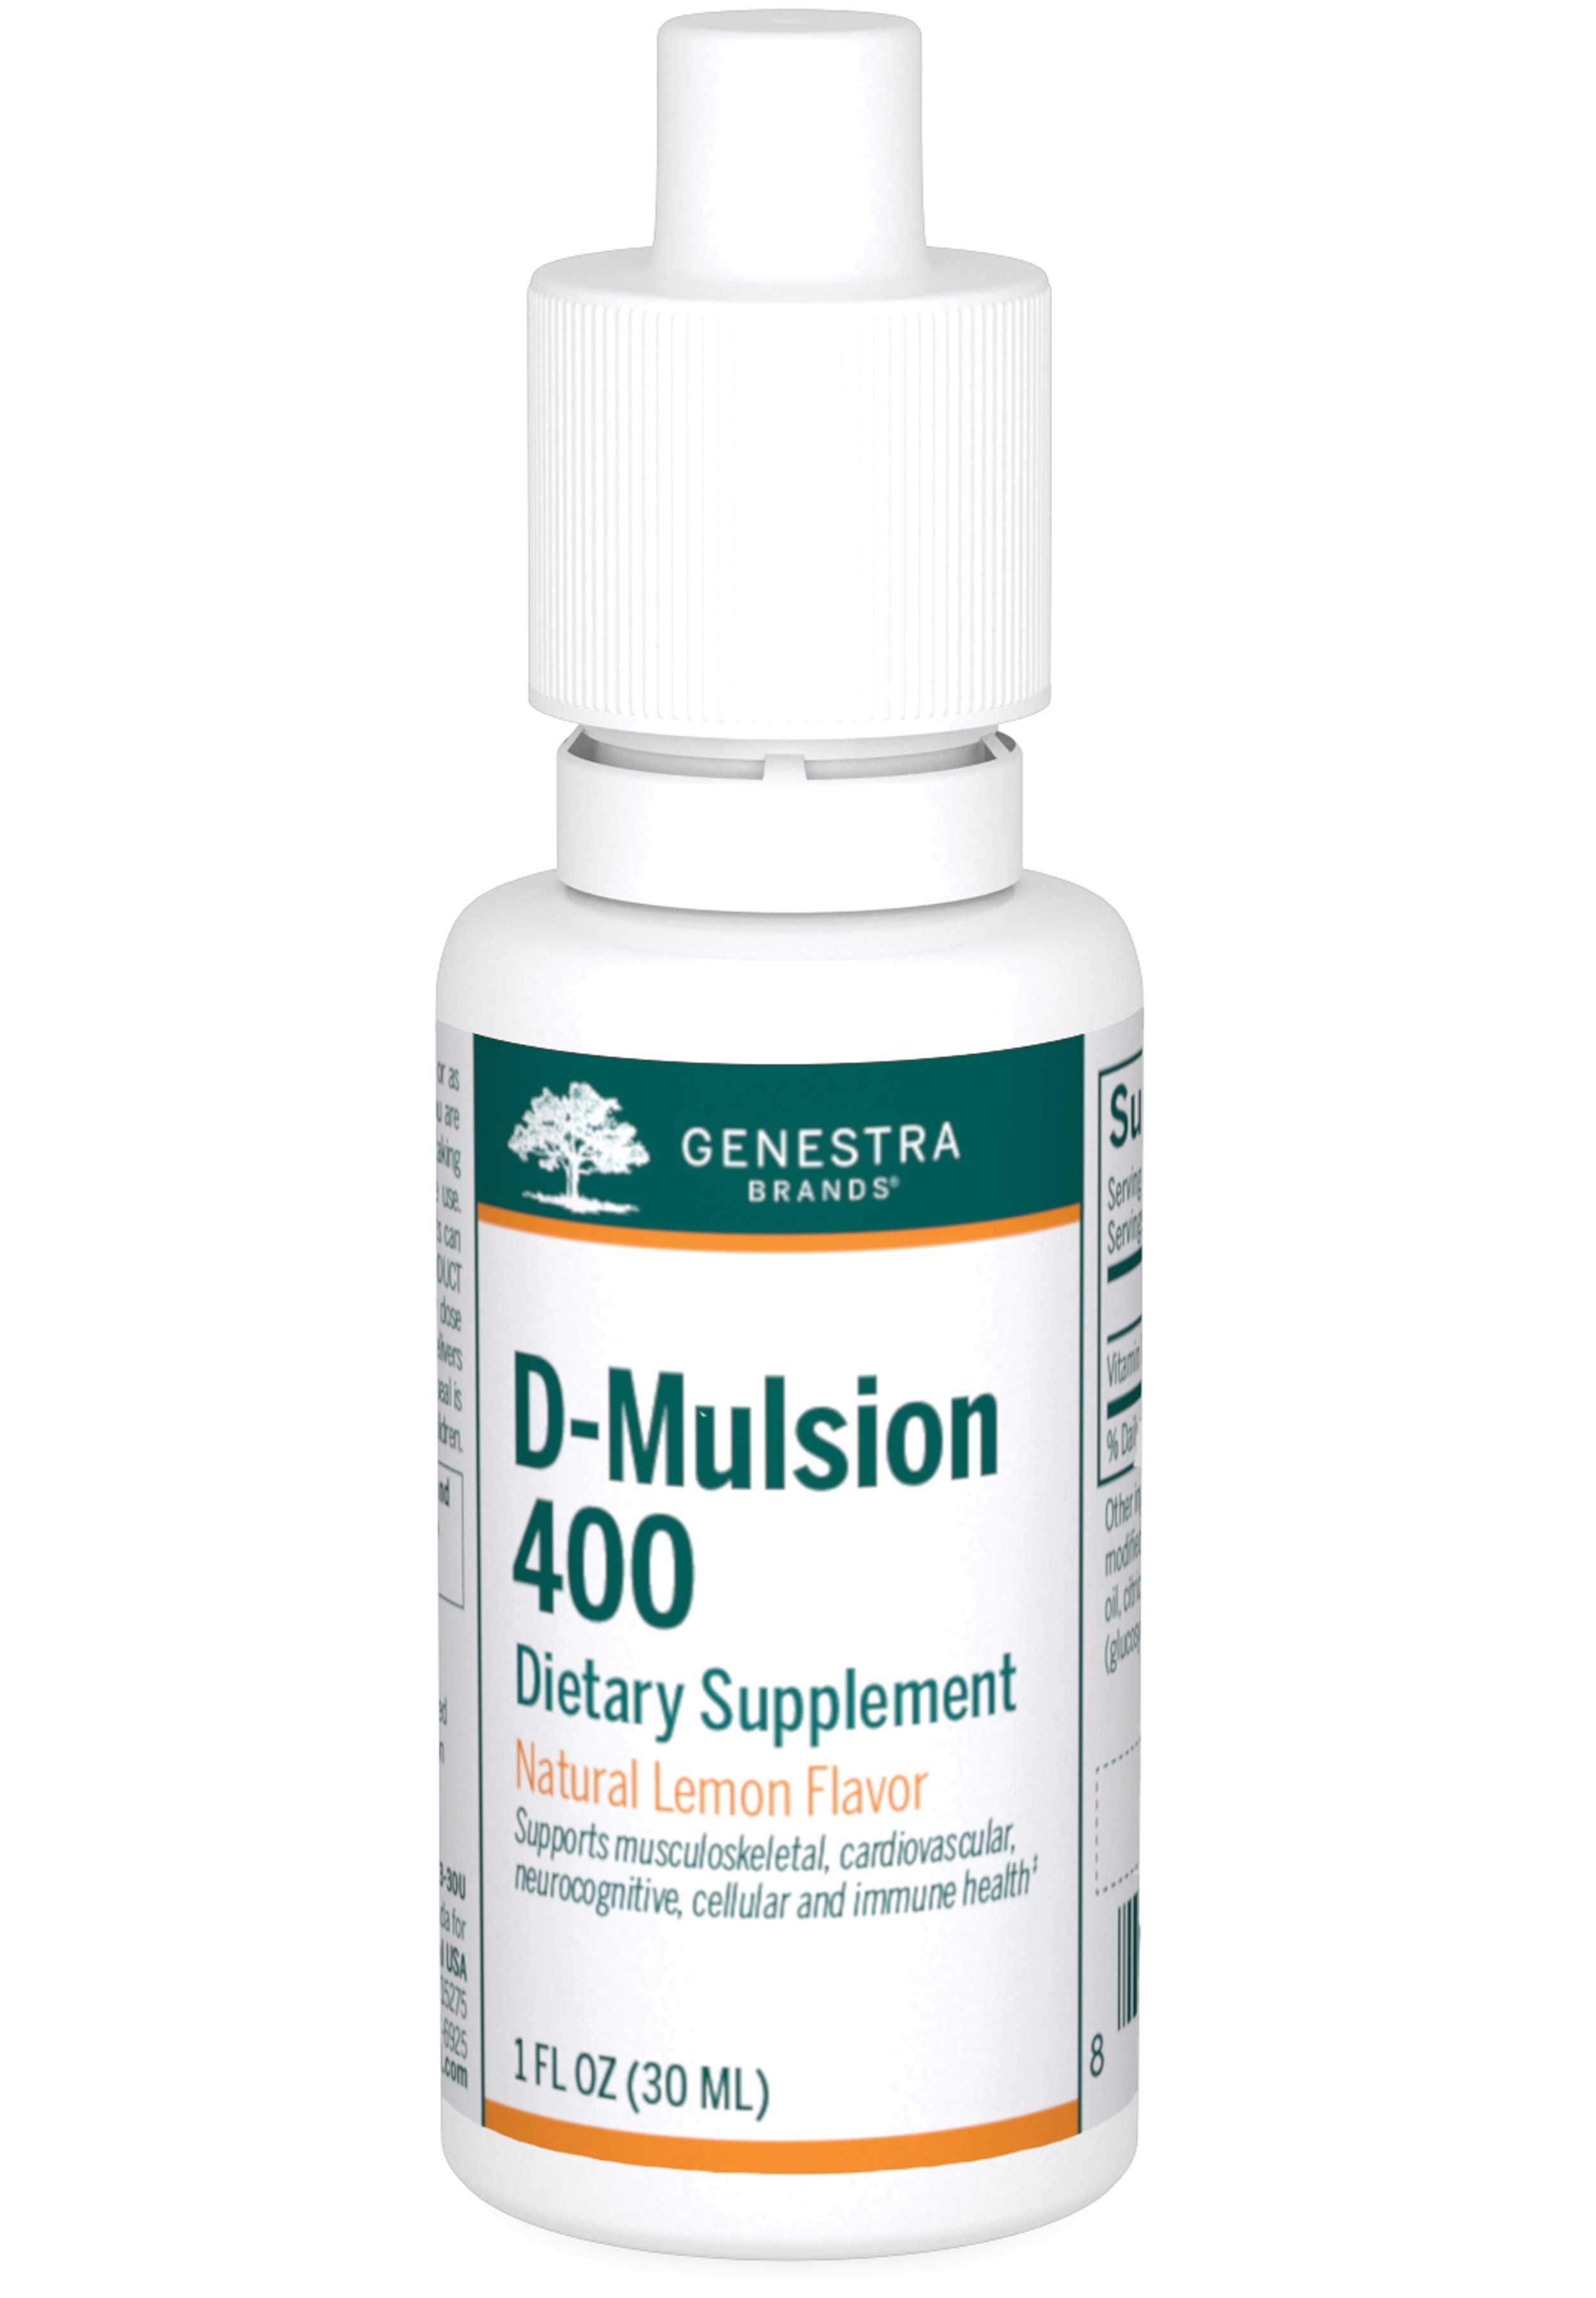 Genestra Brands D-Mulsion 400